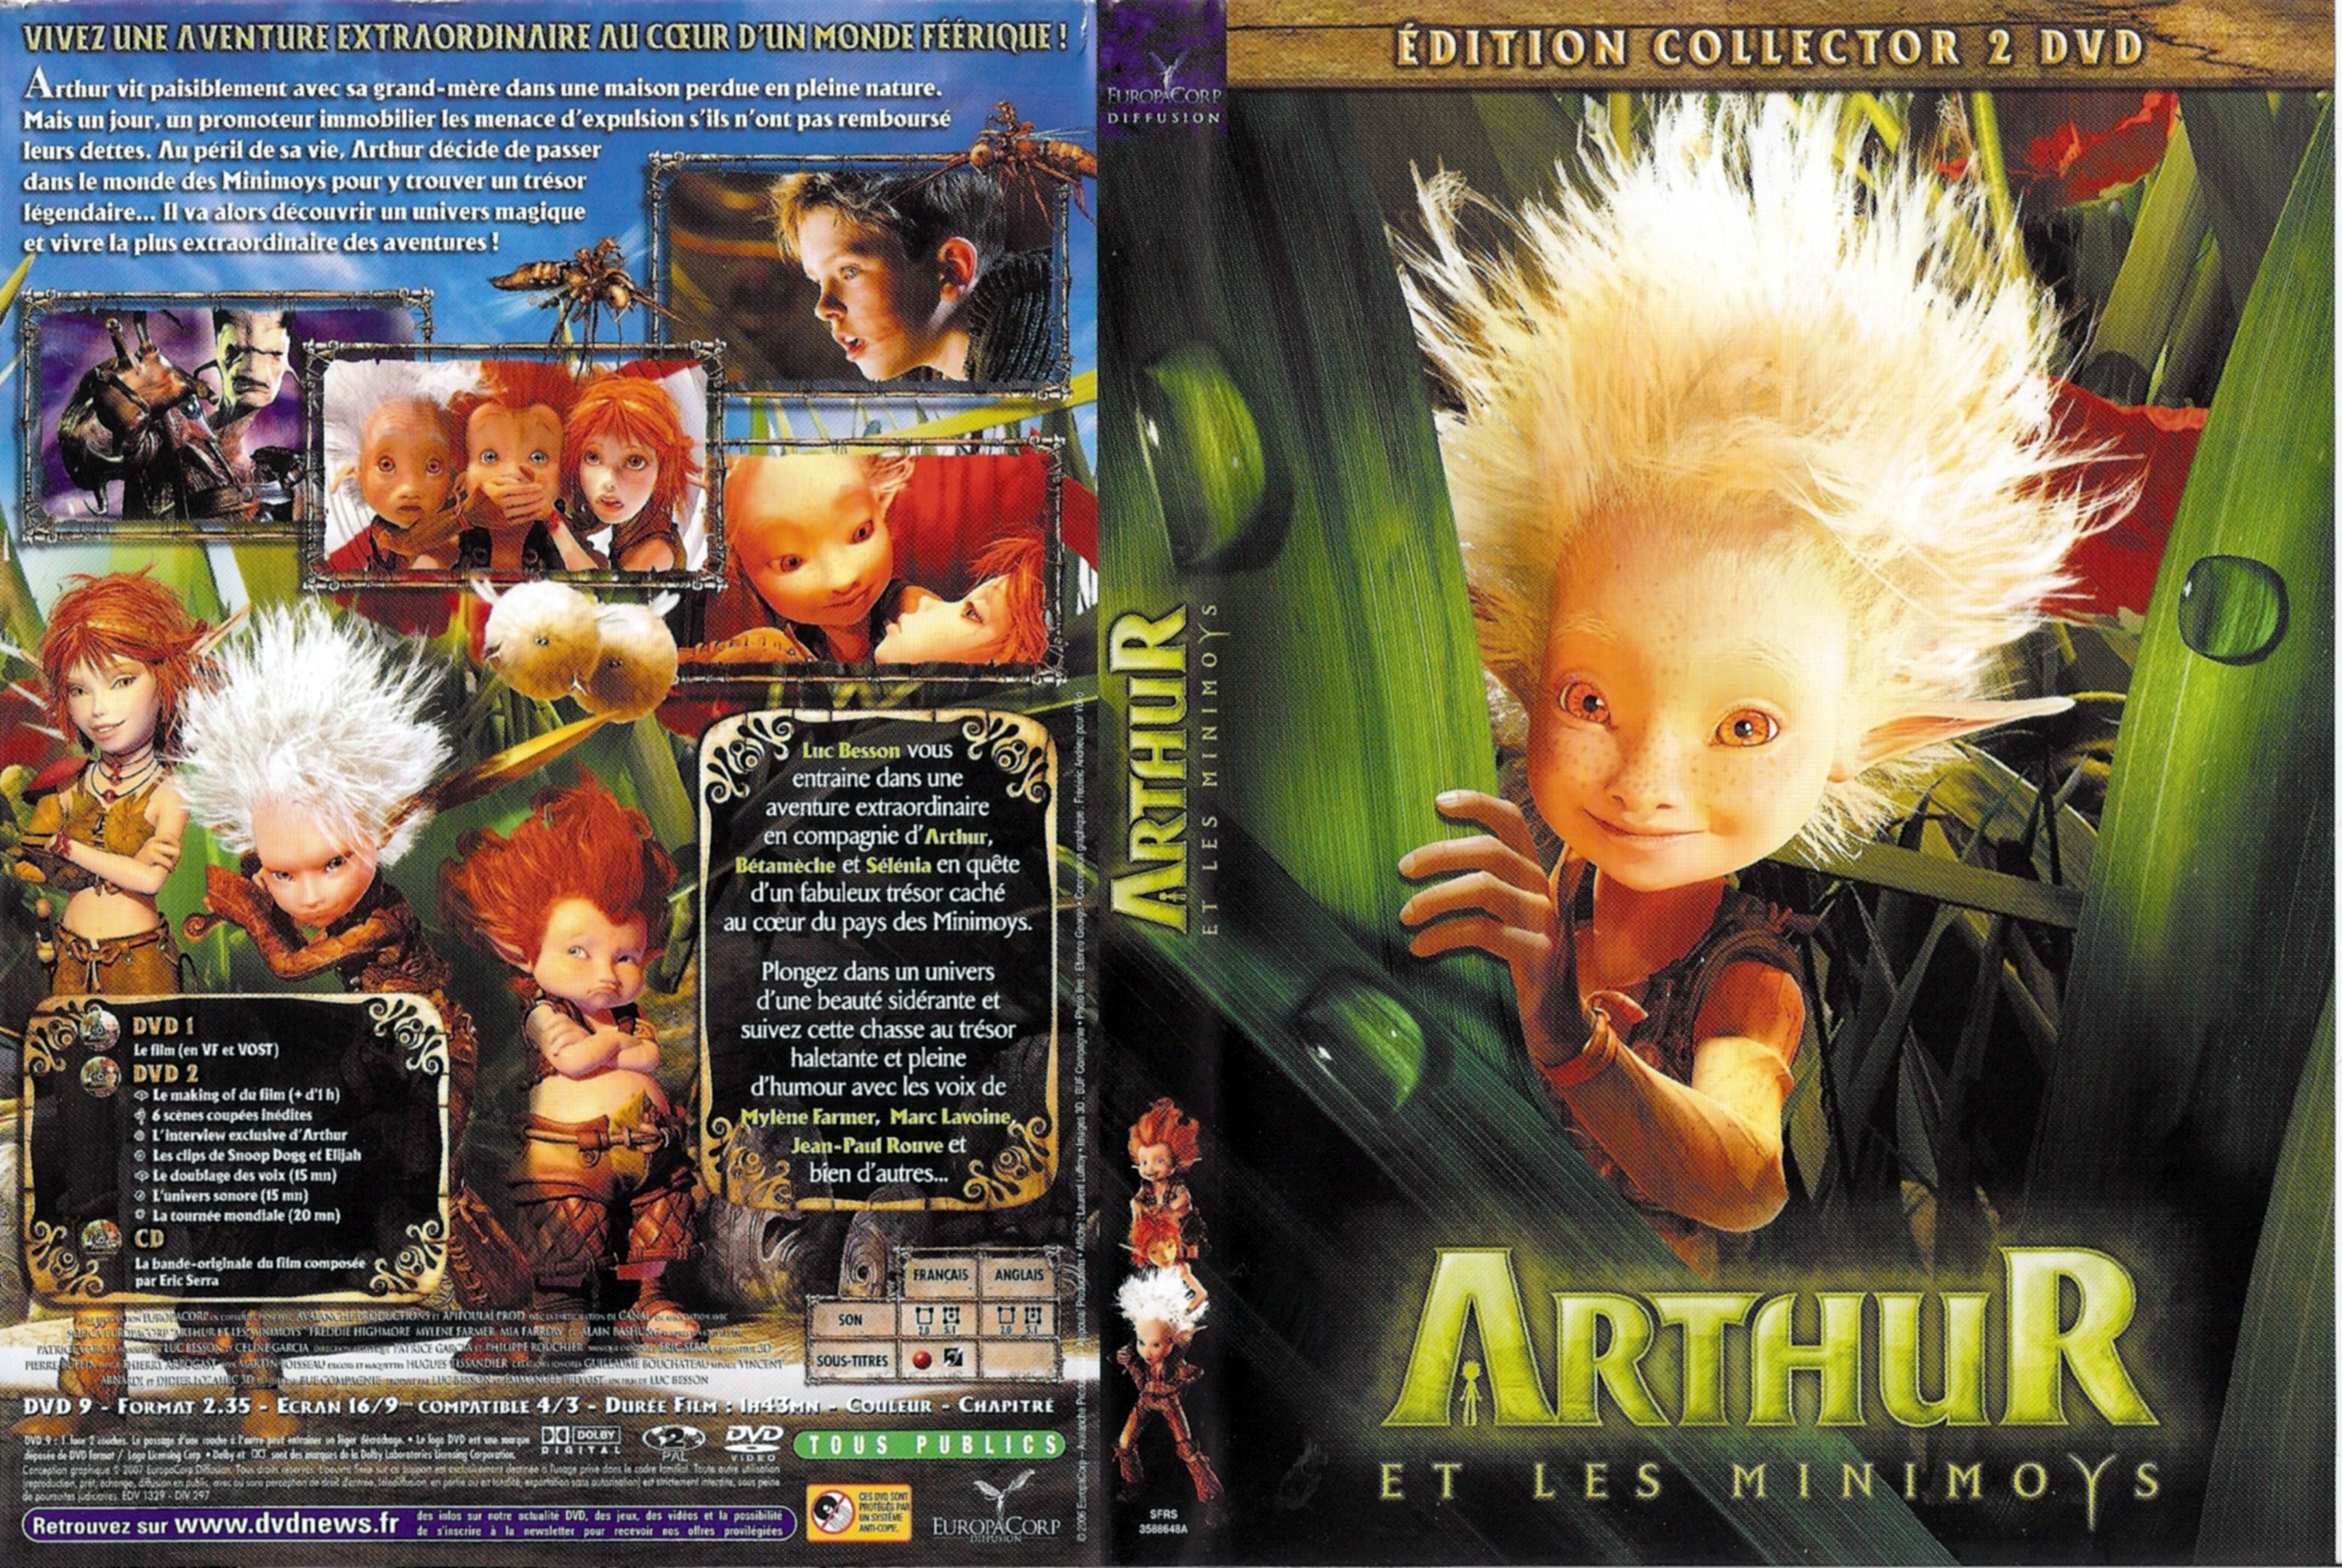 Jaquette DVD Arthur et les minimoys v3